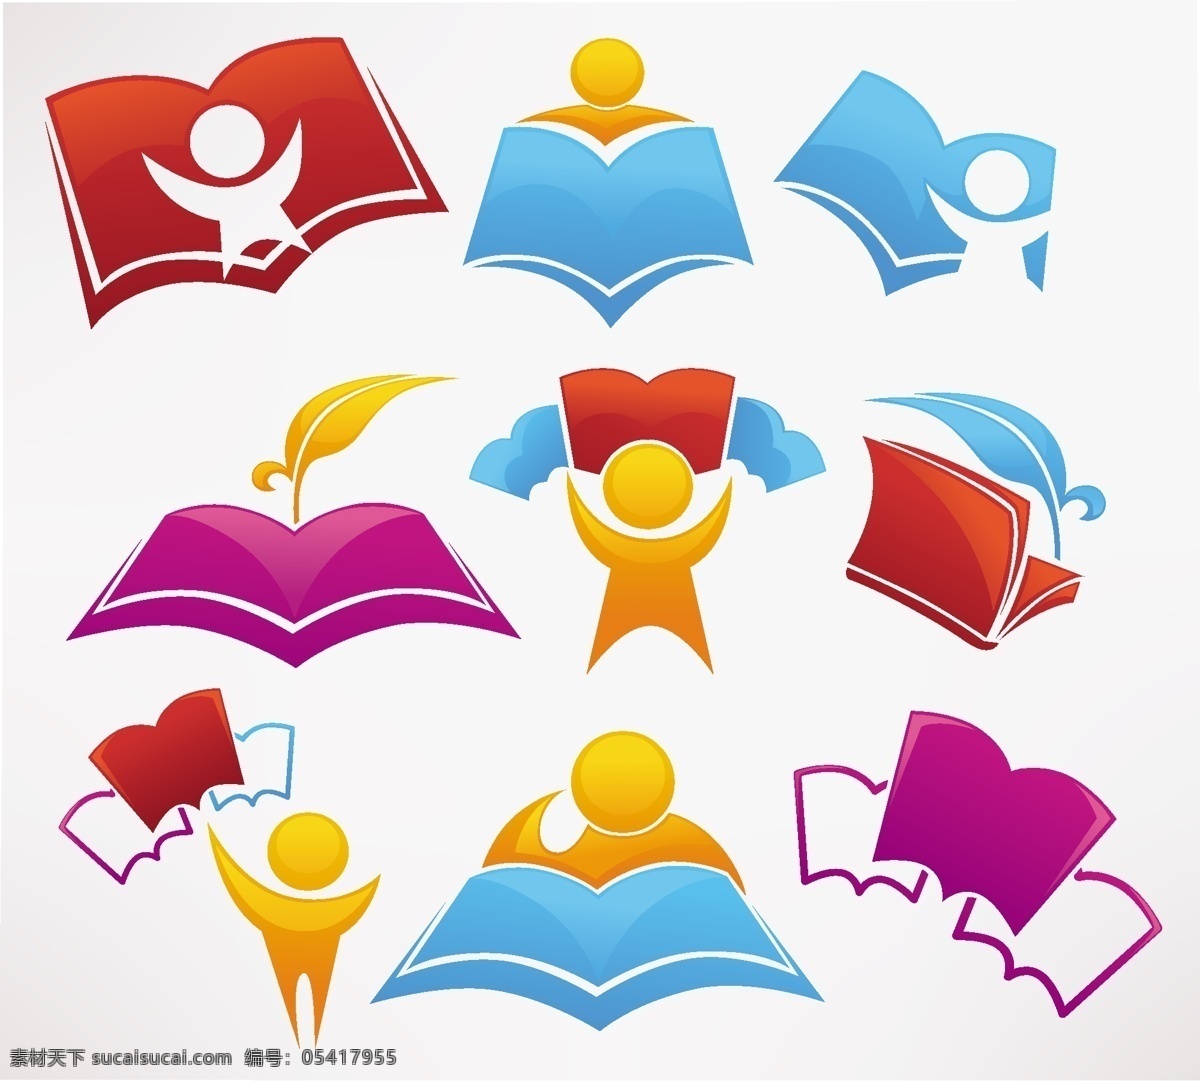 读书图标 儿童读物 读书 学习 阅读 教育 书本 图书 education 图书logo 其他图标 标志图标